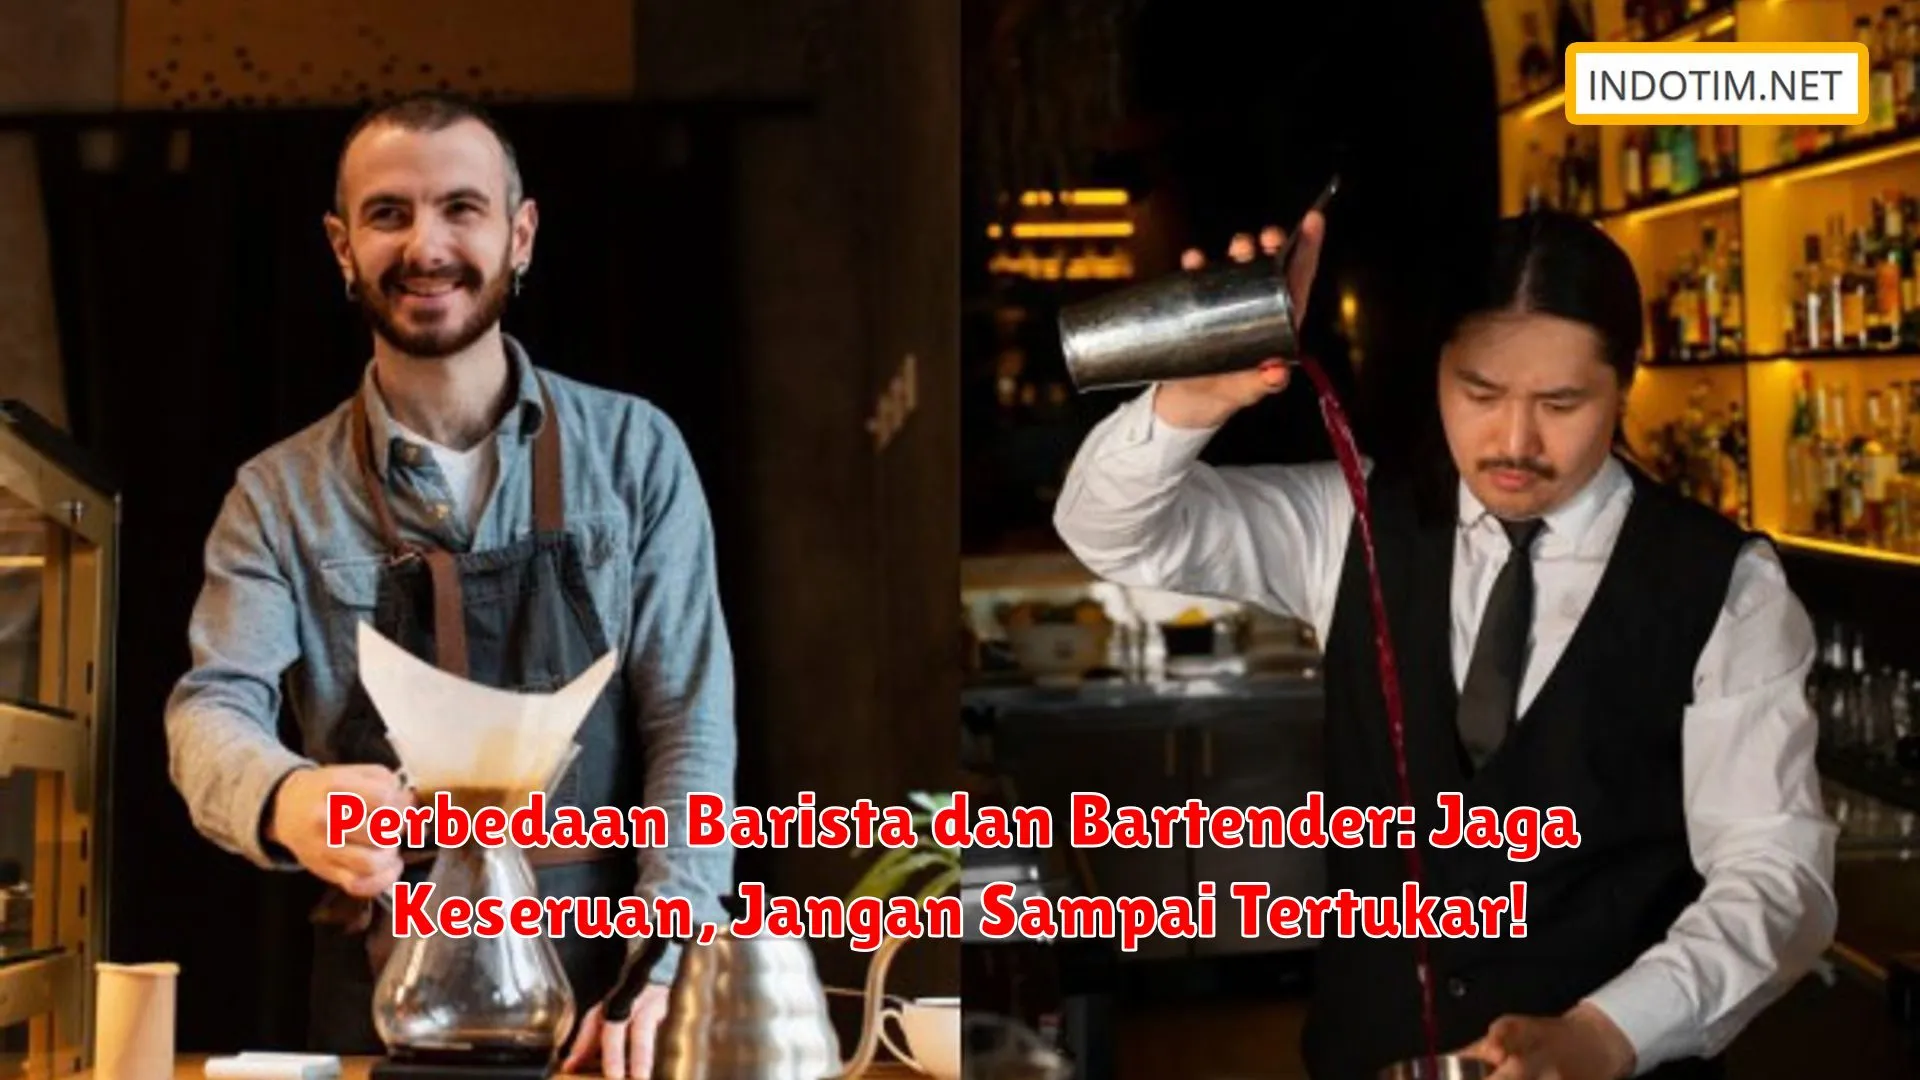 Perbedaan Barista dan Bartender: Jaga Keseruan, Jangan Sampai Tertukar!